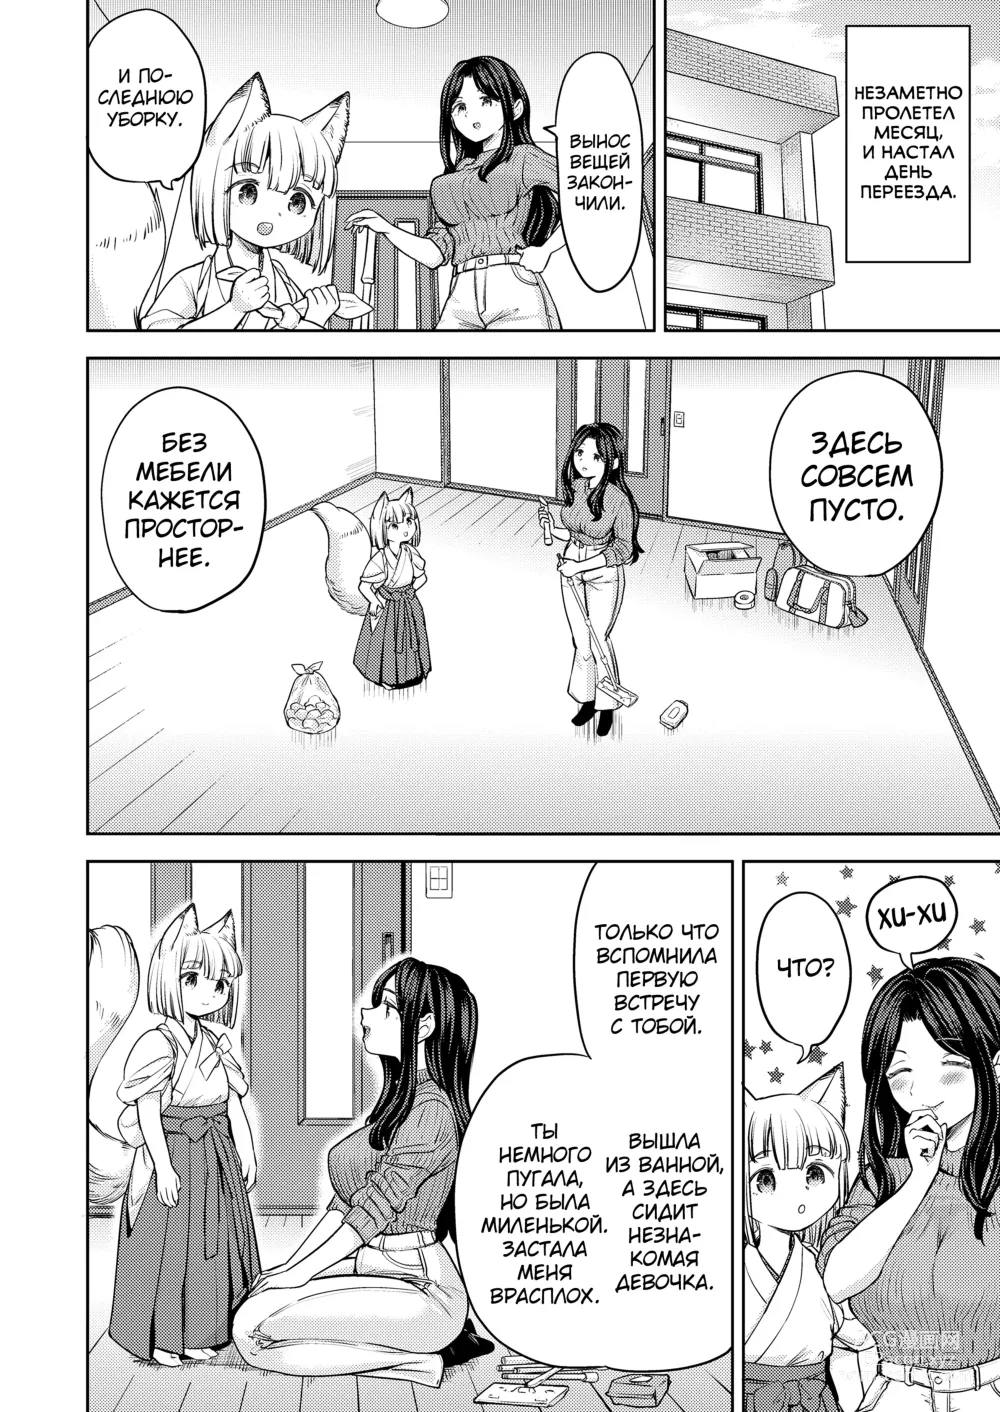 Page 8 of manga Makikomi 6